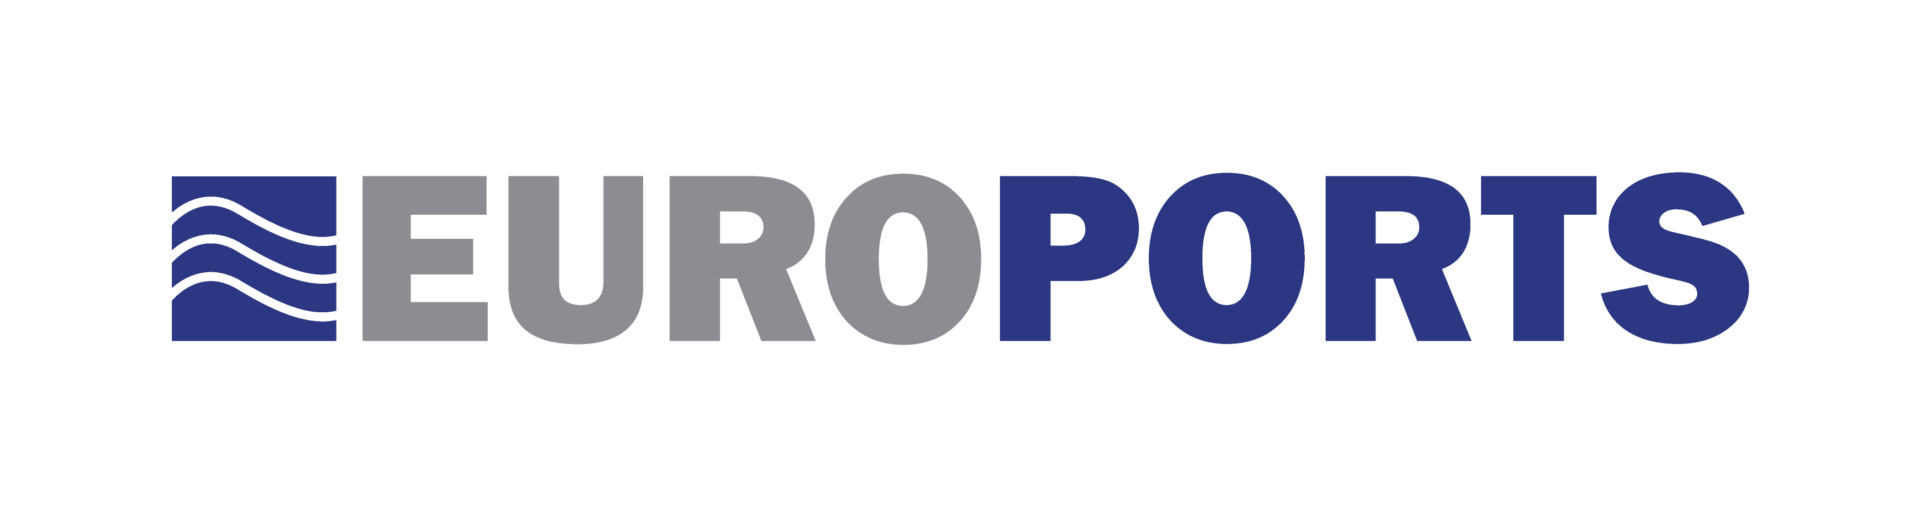 Euroports-logo-colour-RGB-5